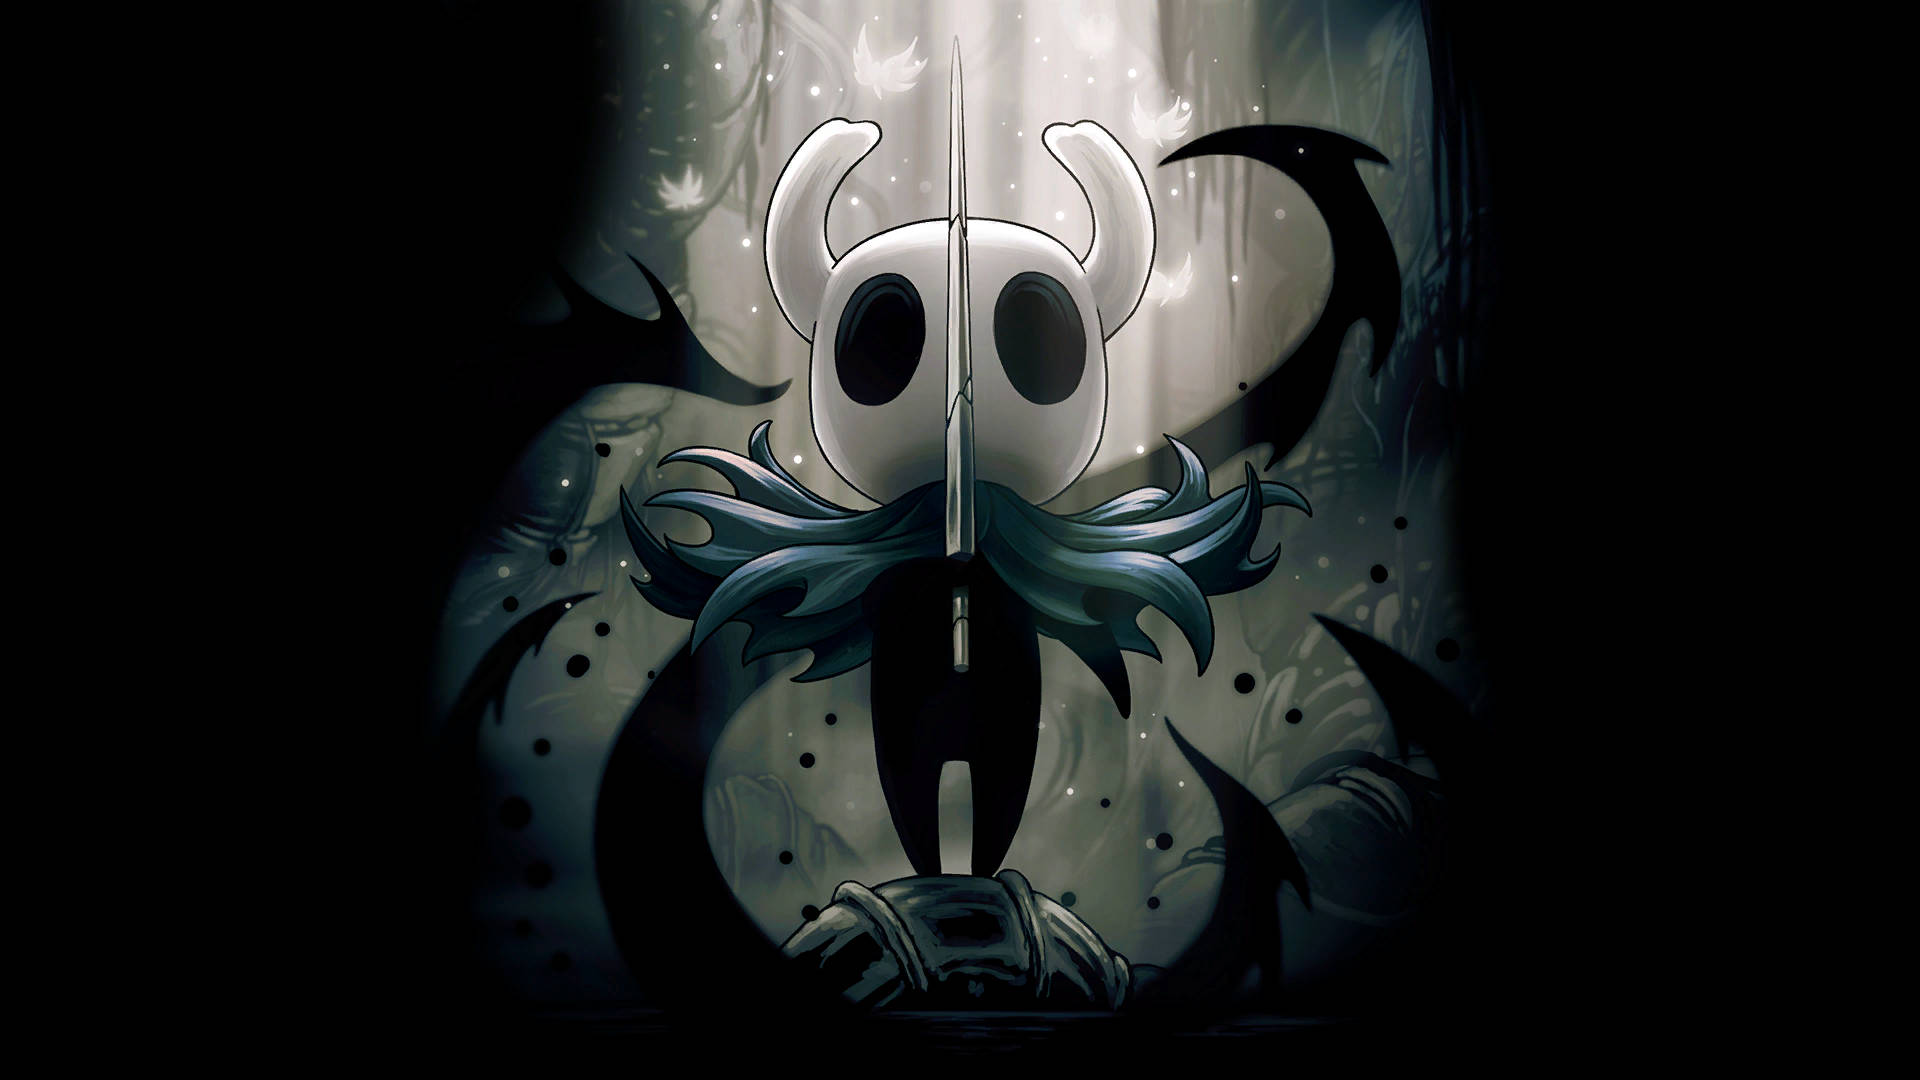 Hd Fan Art Poster Of Hollow Knight Background